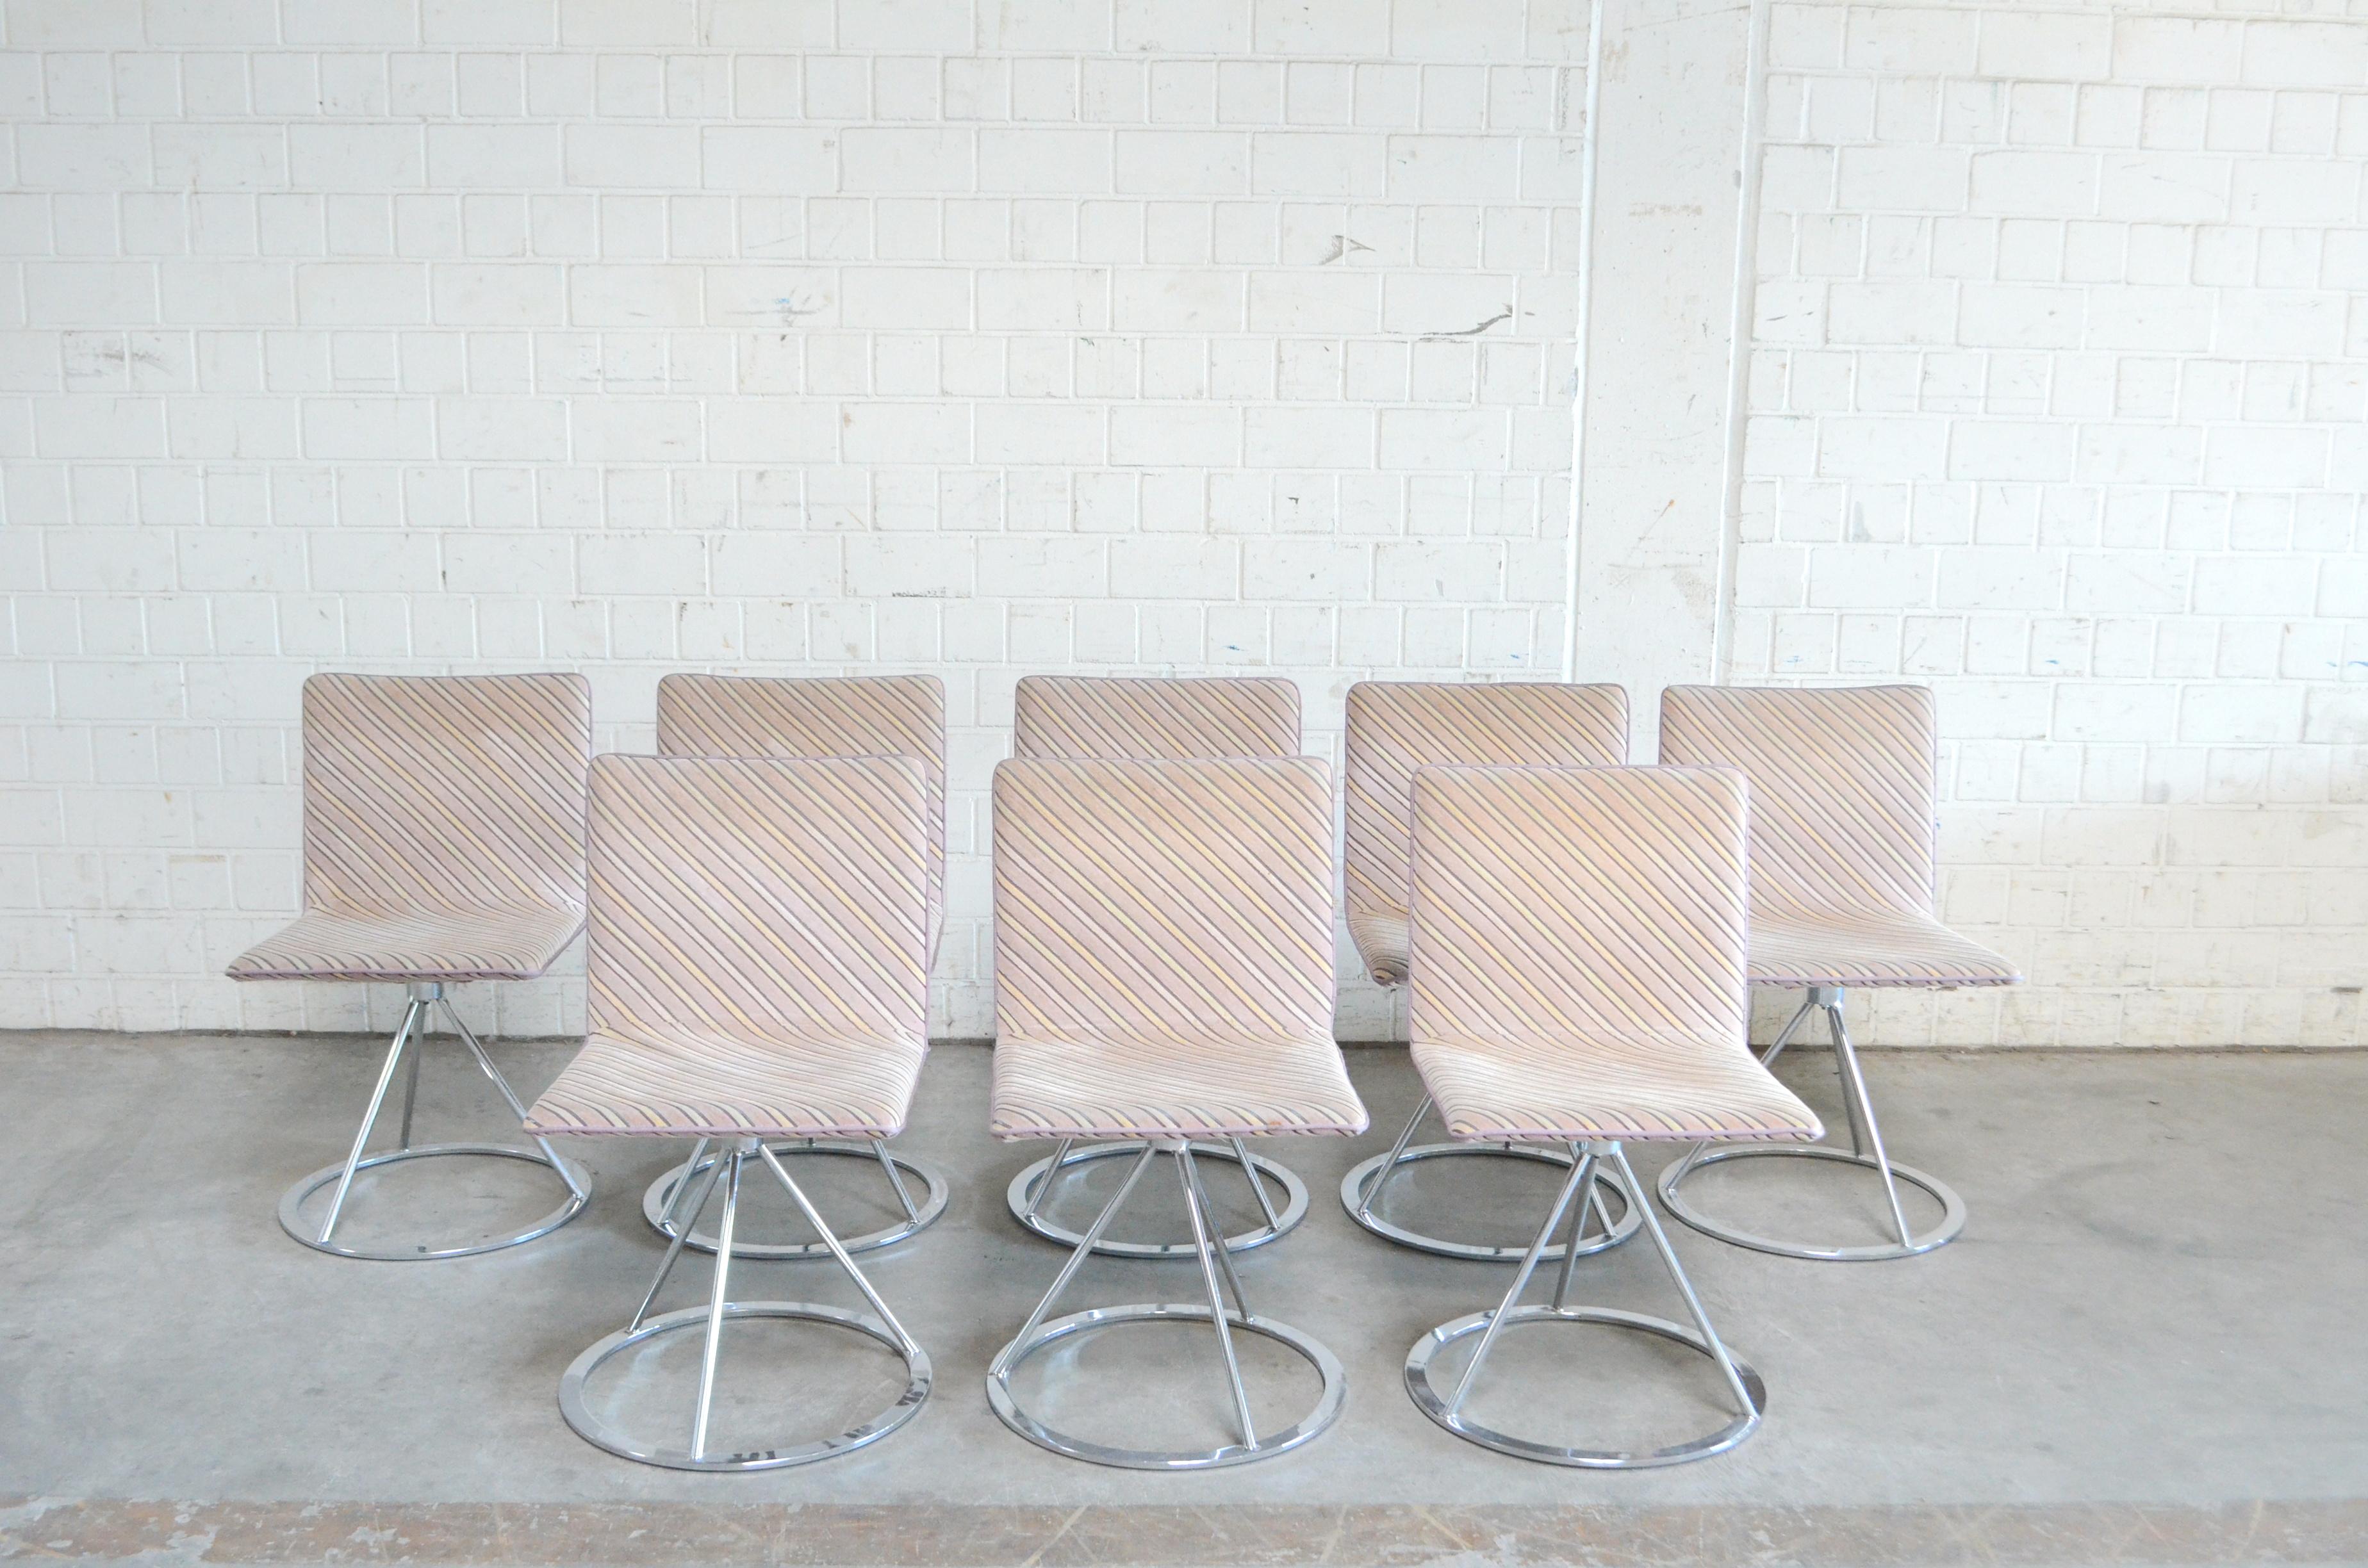 Diese italienischen Designstühle stammen aus den 1980er Jahren und wurden von Salvati e Tresoldi entworfen und von Saporiti Italia hergestellt.
Ein zeitgenössischer Designstuhl mit drehbarem verchromtem Stahlgestell und gepolstertem Sitz.
Der